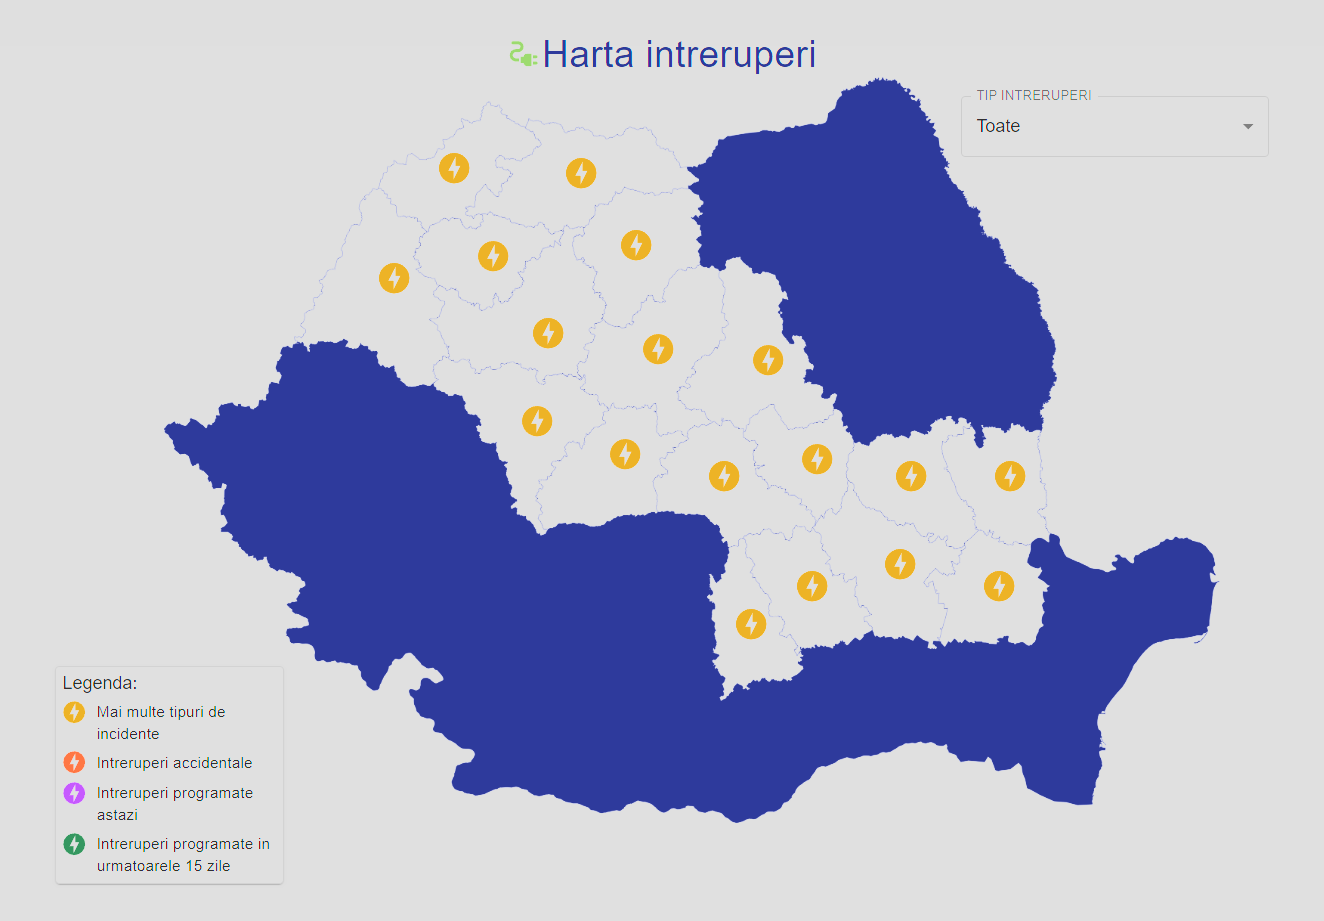 Offizielle LAST MINUTE ELECTRICA-Mitteilungen. Kunden müssen die Karte mit den Ausfällen in Rumänien kennen